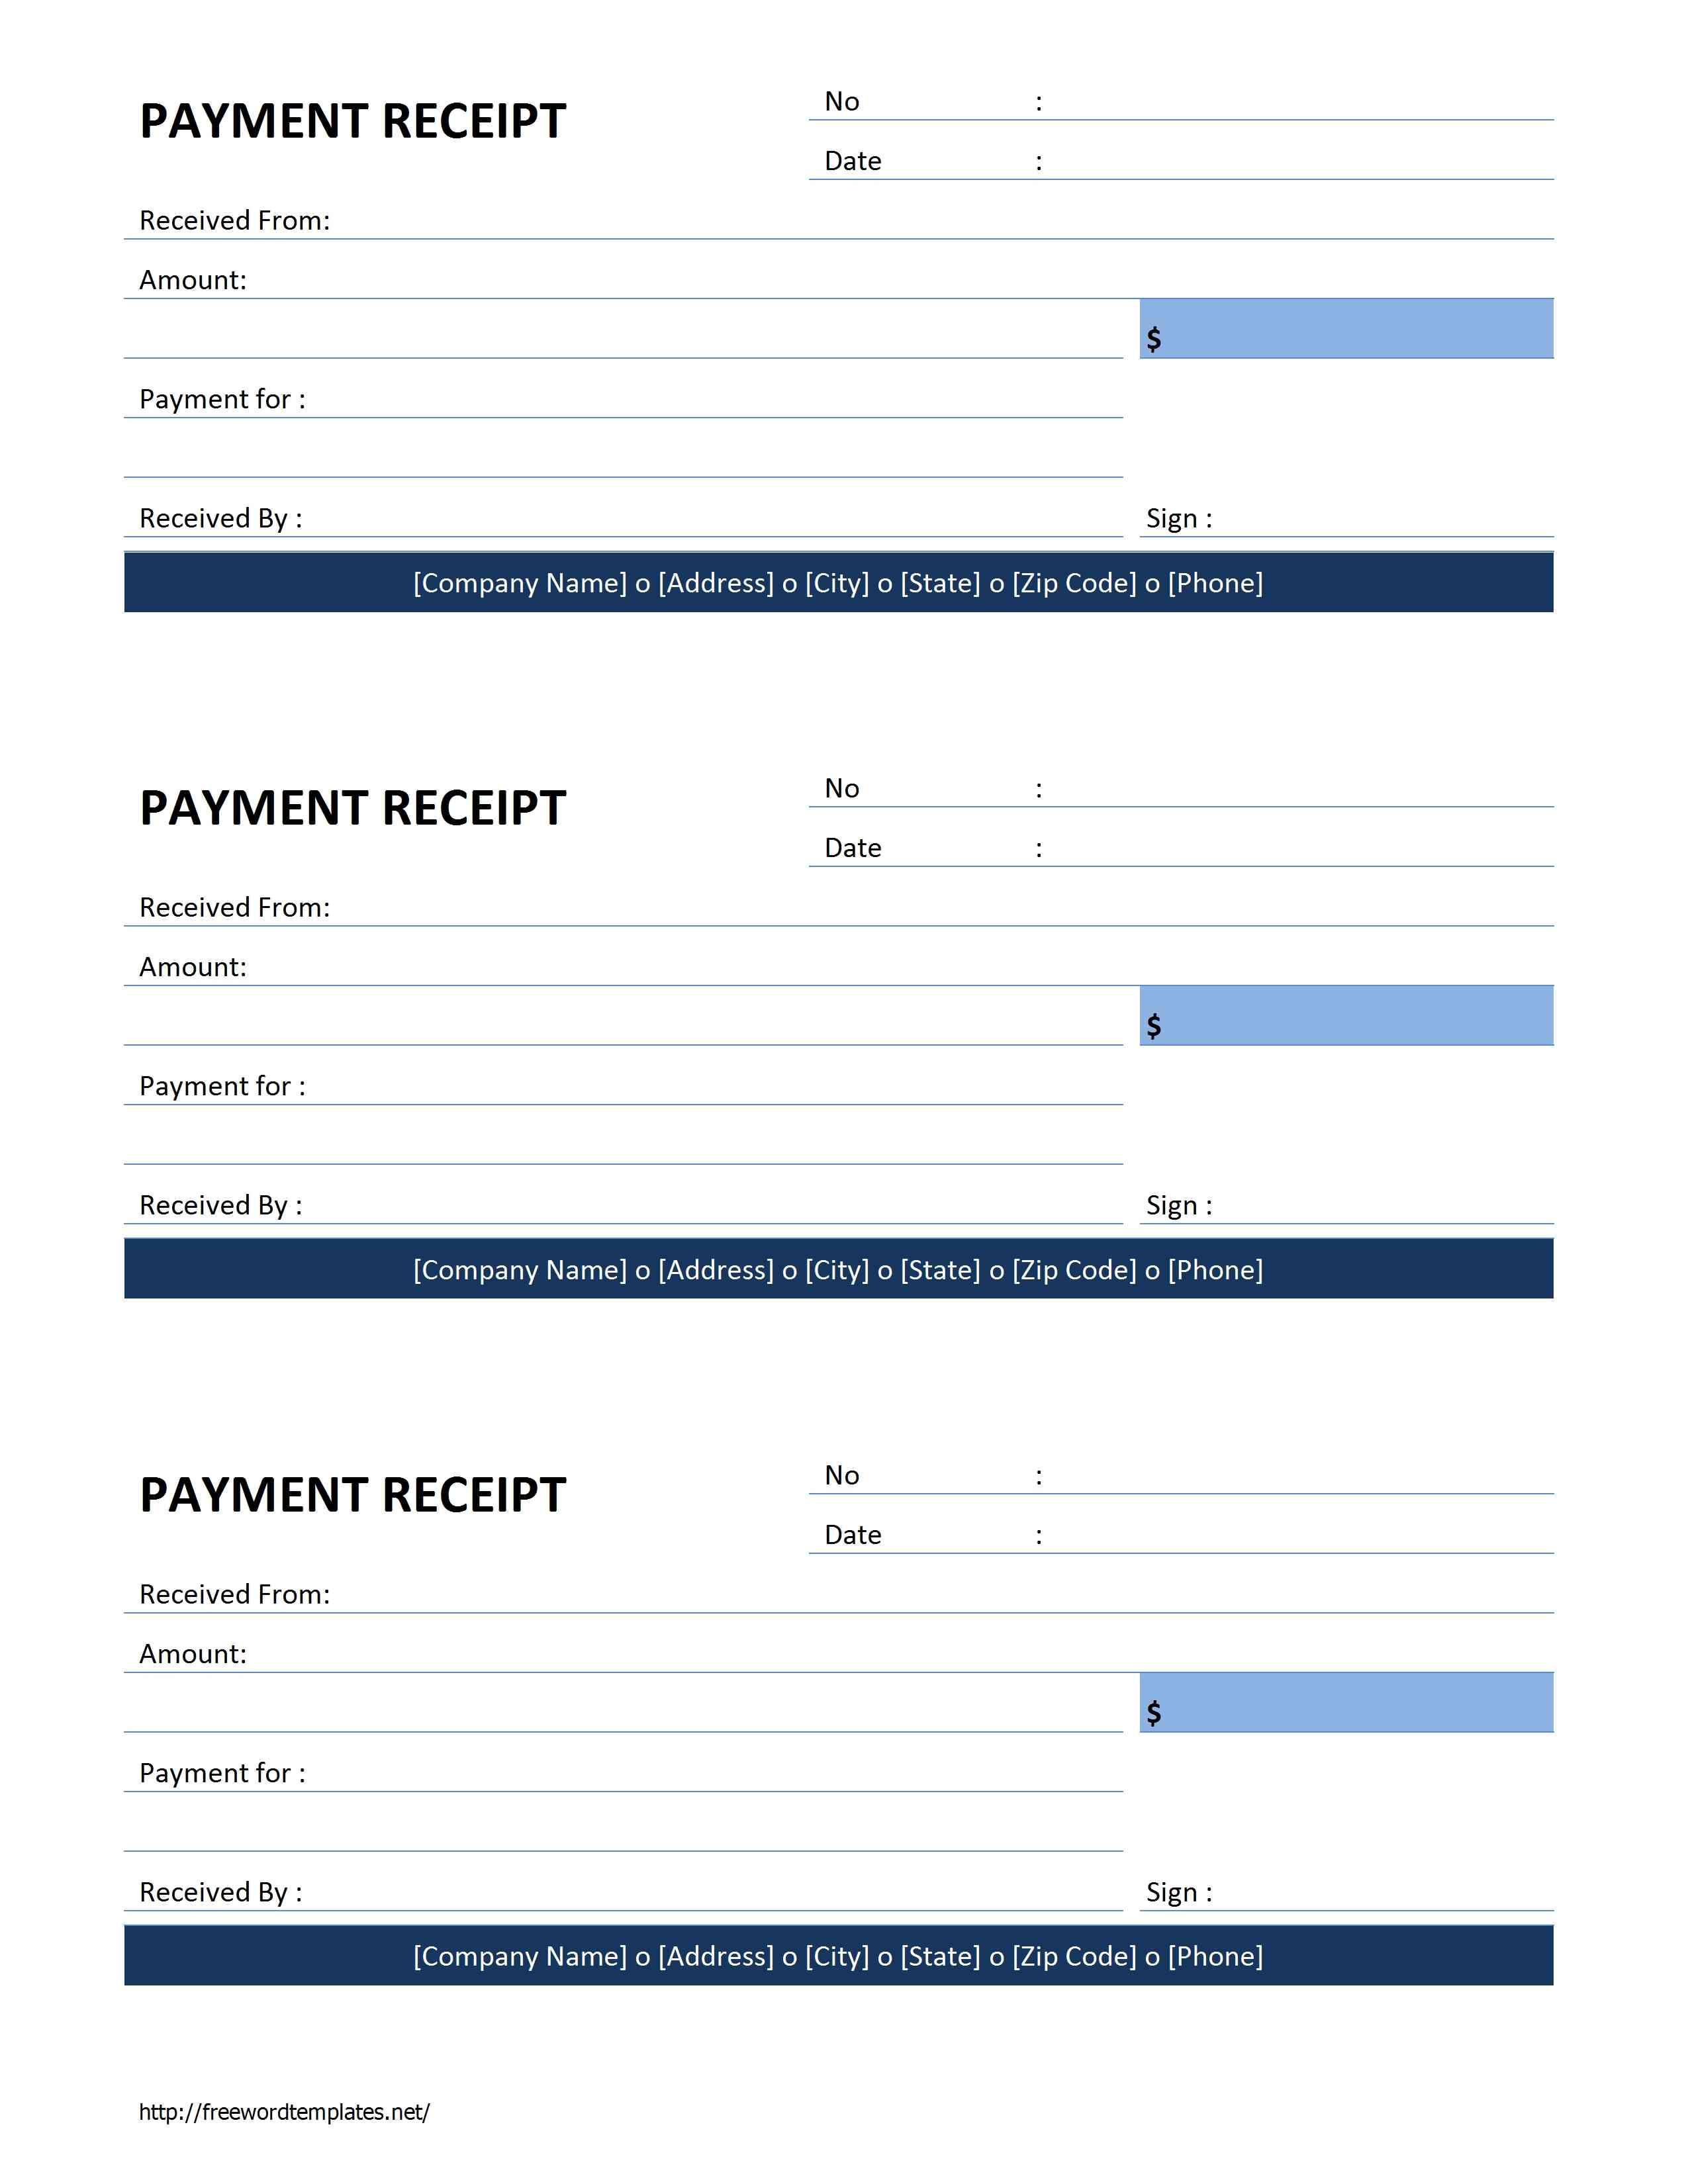 payment-receipt-open-office-templates